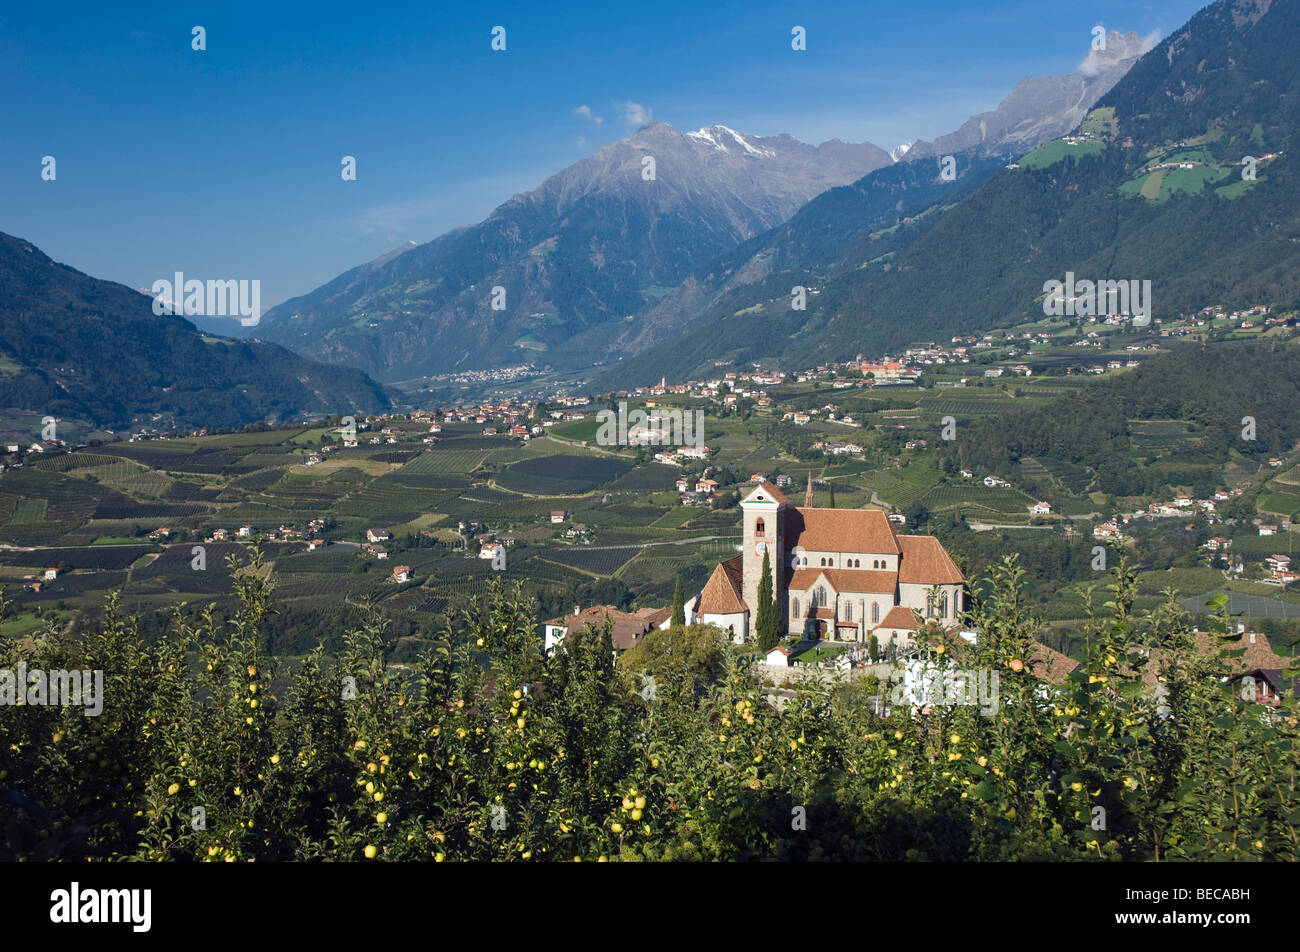 Village de montagne, Schenna ou Scena près de Merano, Trentin, Haut Adige, Italie, Europe Banque D'Images